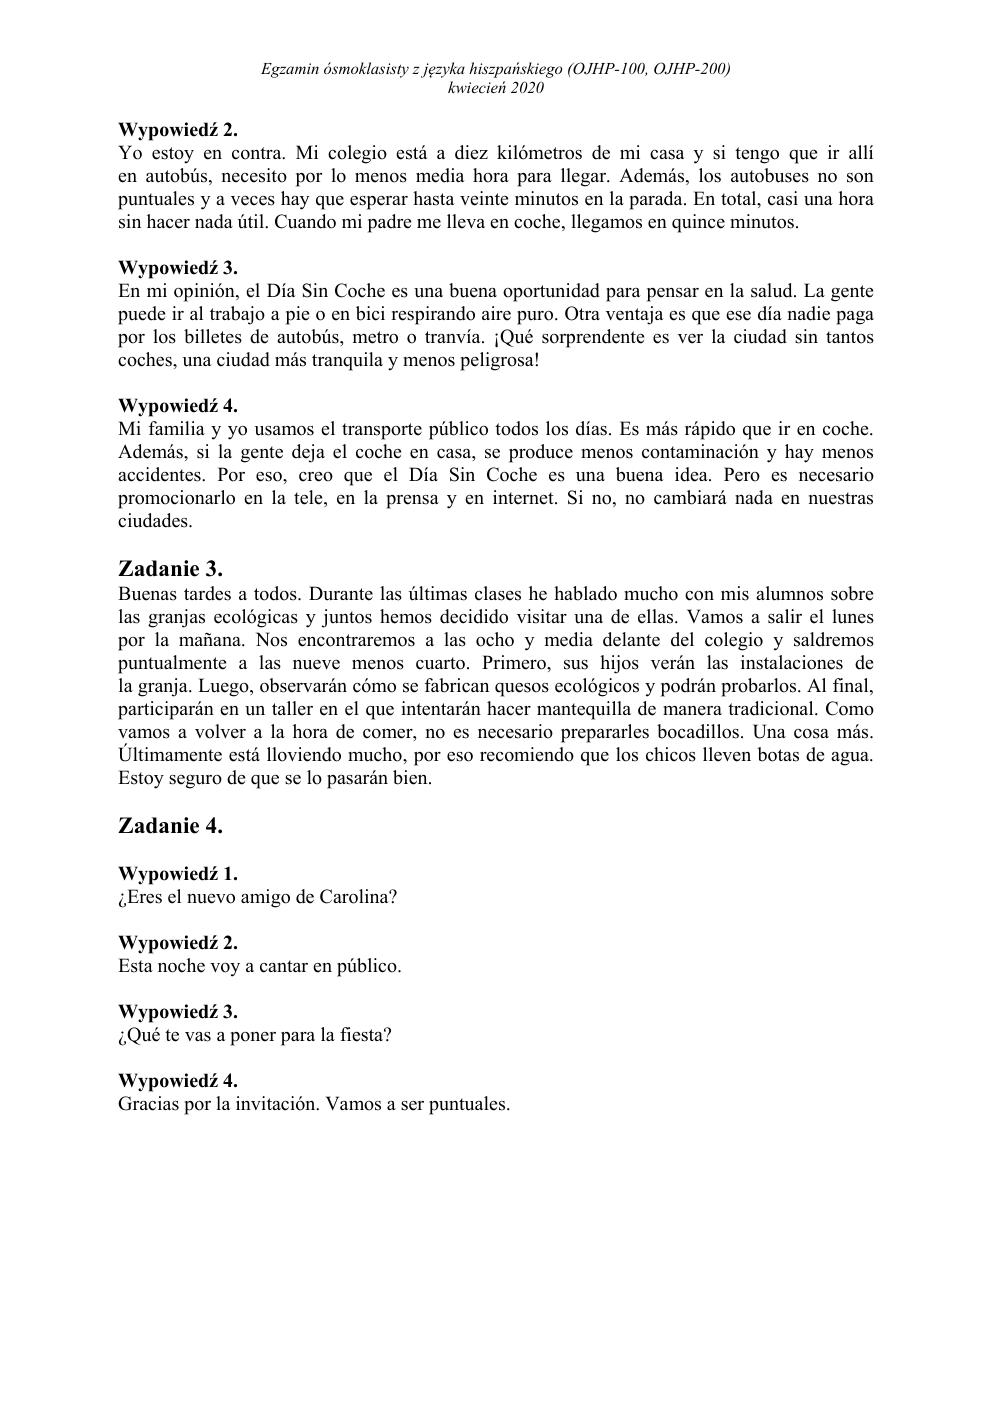 transkrypcja - hiszpański - egzamin ósmoklasisty 2020-2